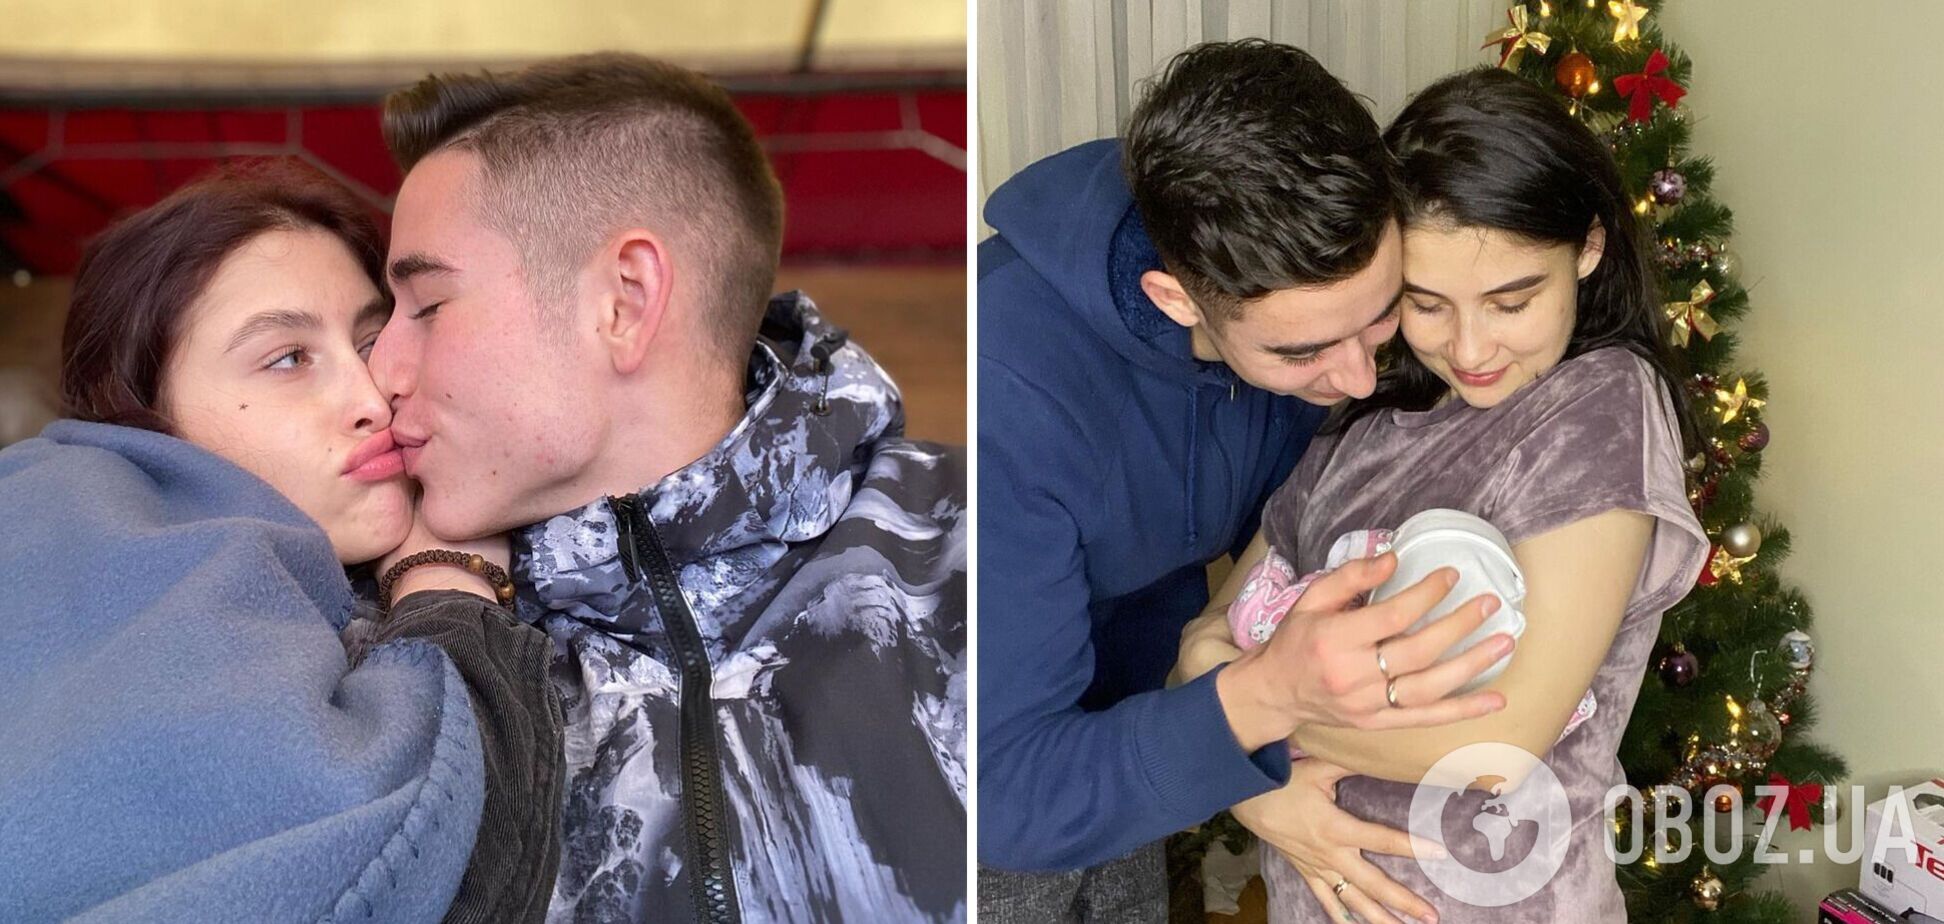 'Бачити не хочу': дружина 19-річного Романа Сасанчина поскаржилася на сварку з чоловіком